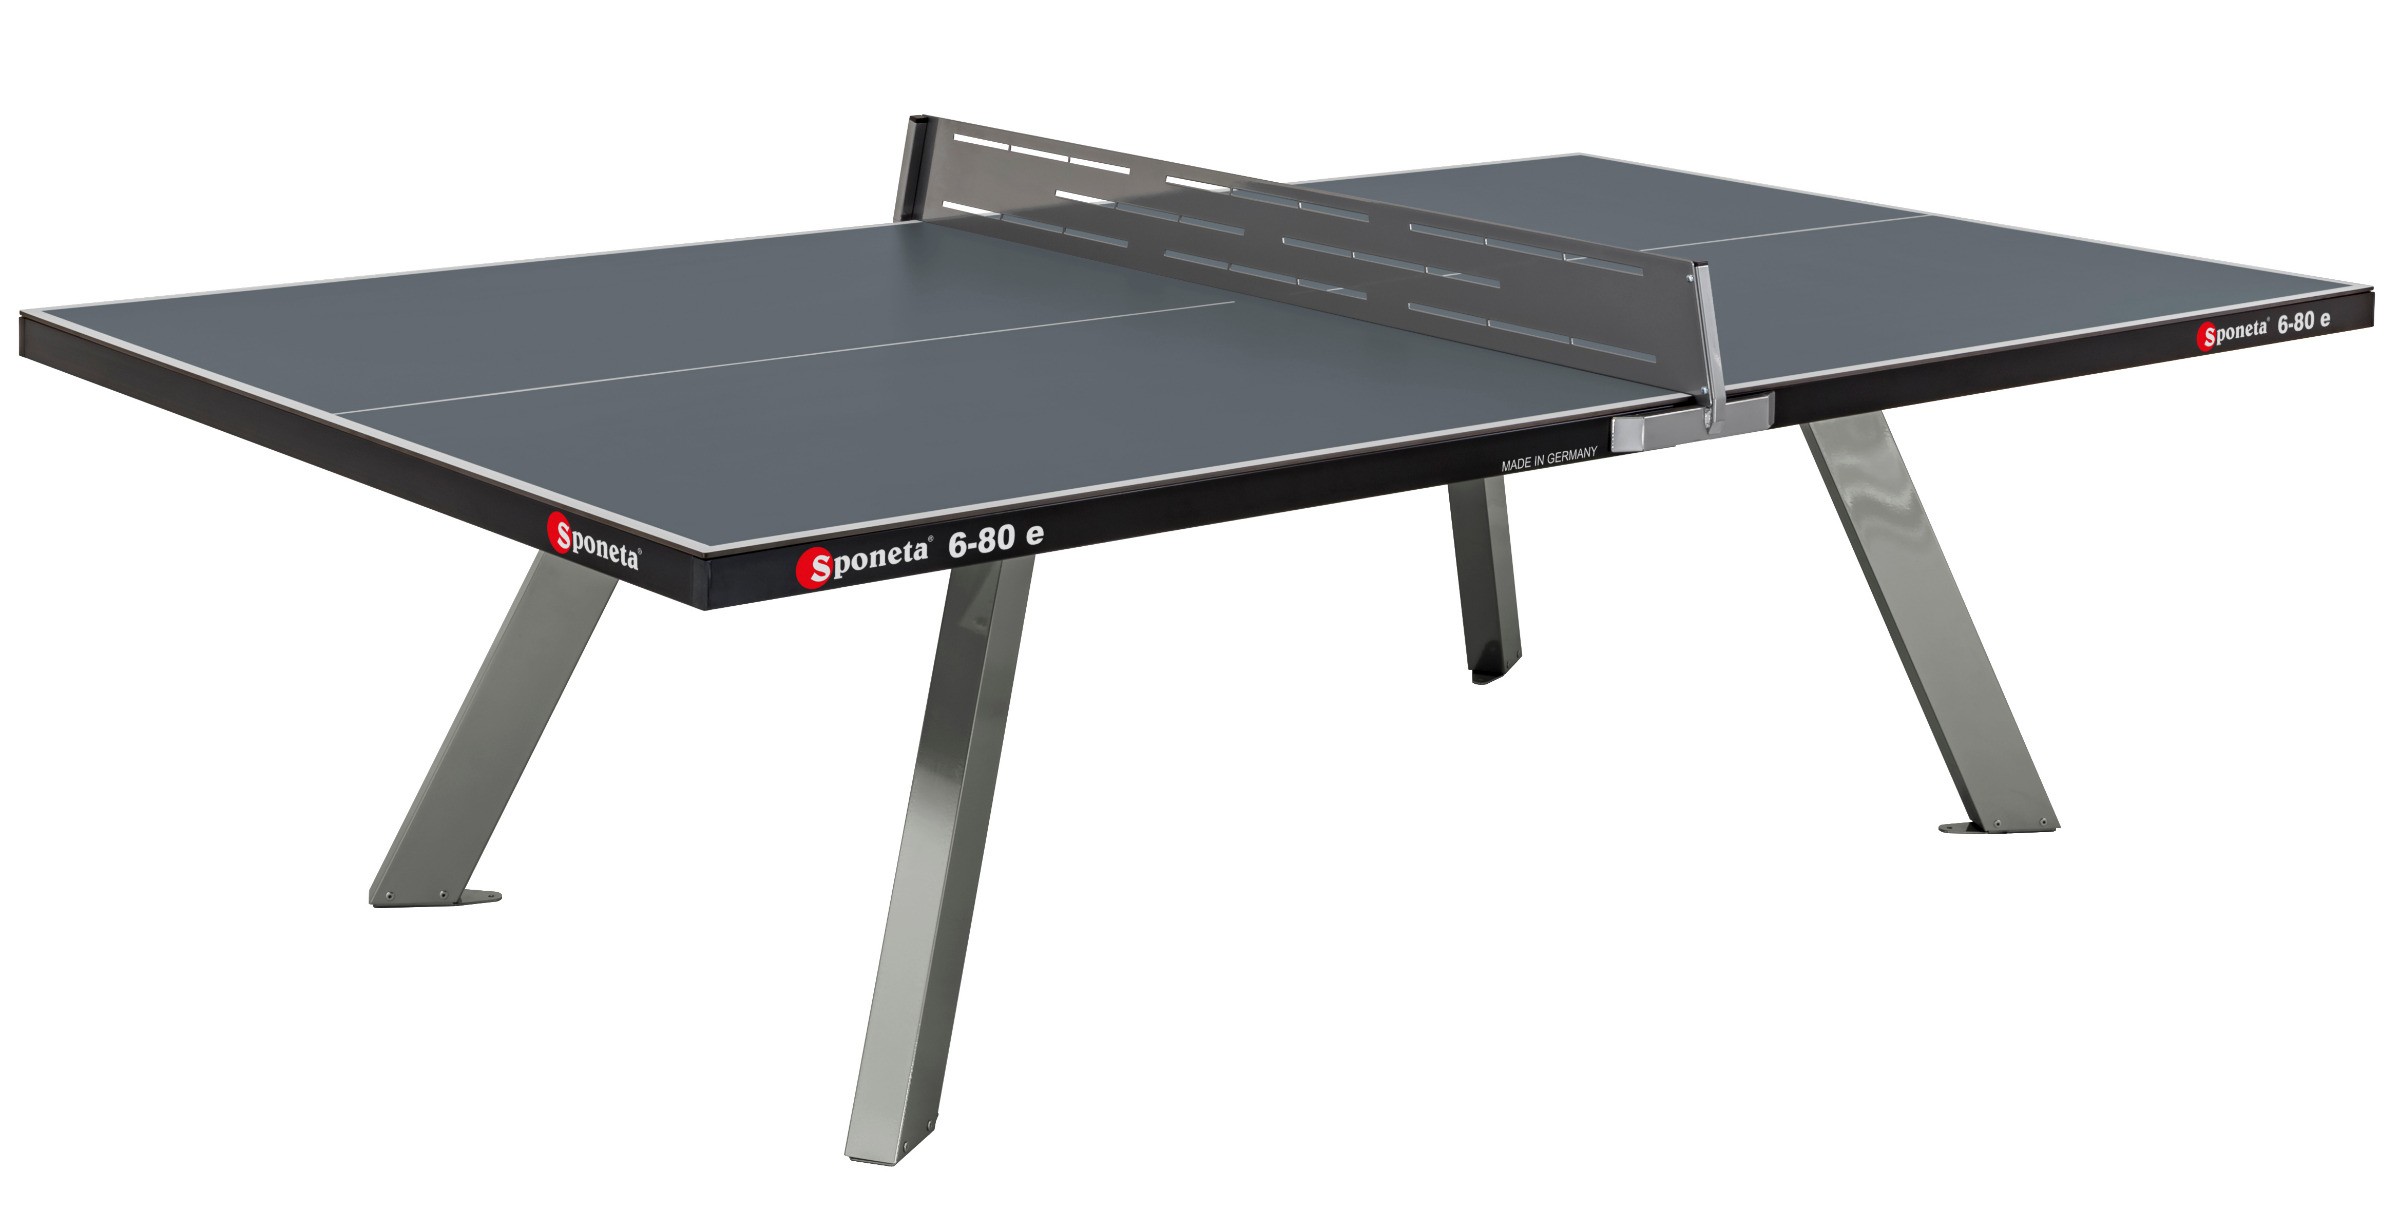 Sponeta tafeltennistafel S6-80e outdoor grijs | Van Ee Buitenspeelgoed